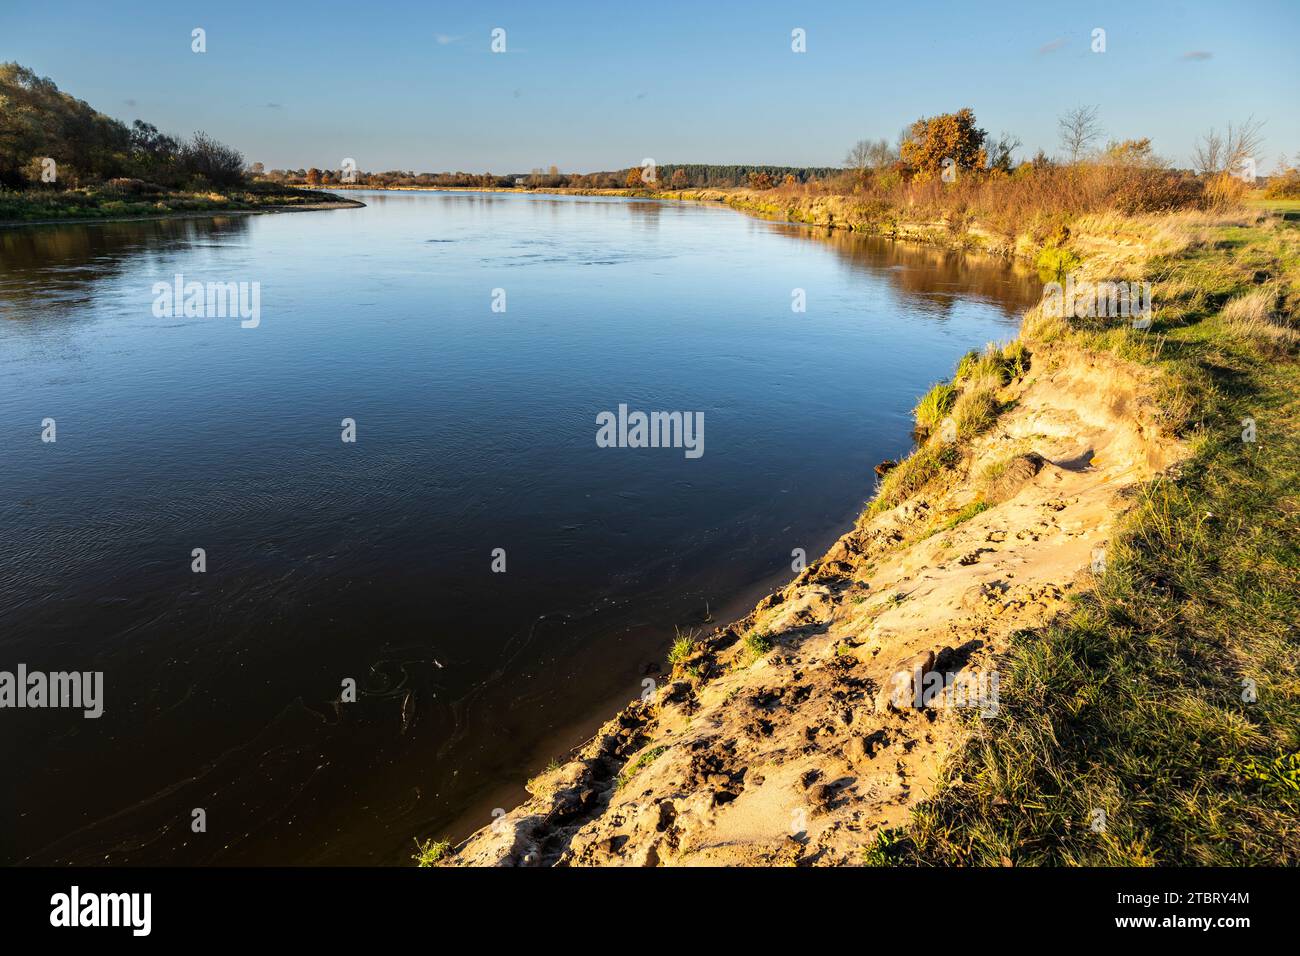 Europe, Poland, Voivodeship Masovian, Bug river near Branszczyk Stock Photo